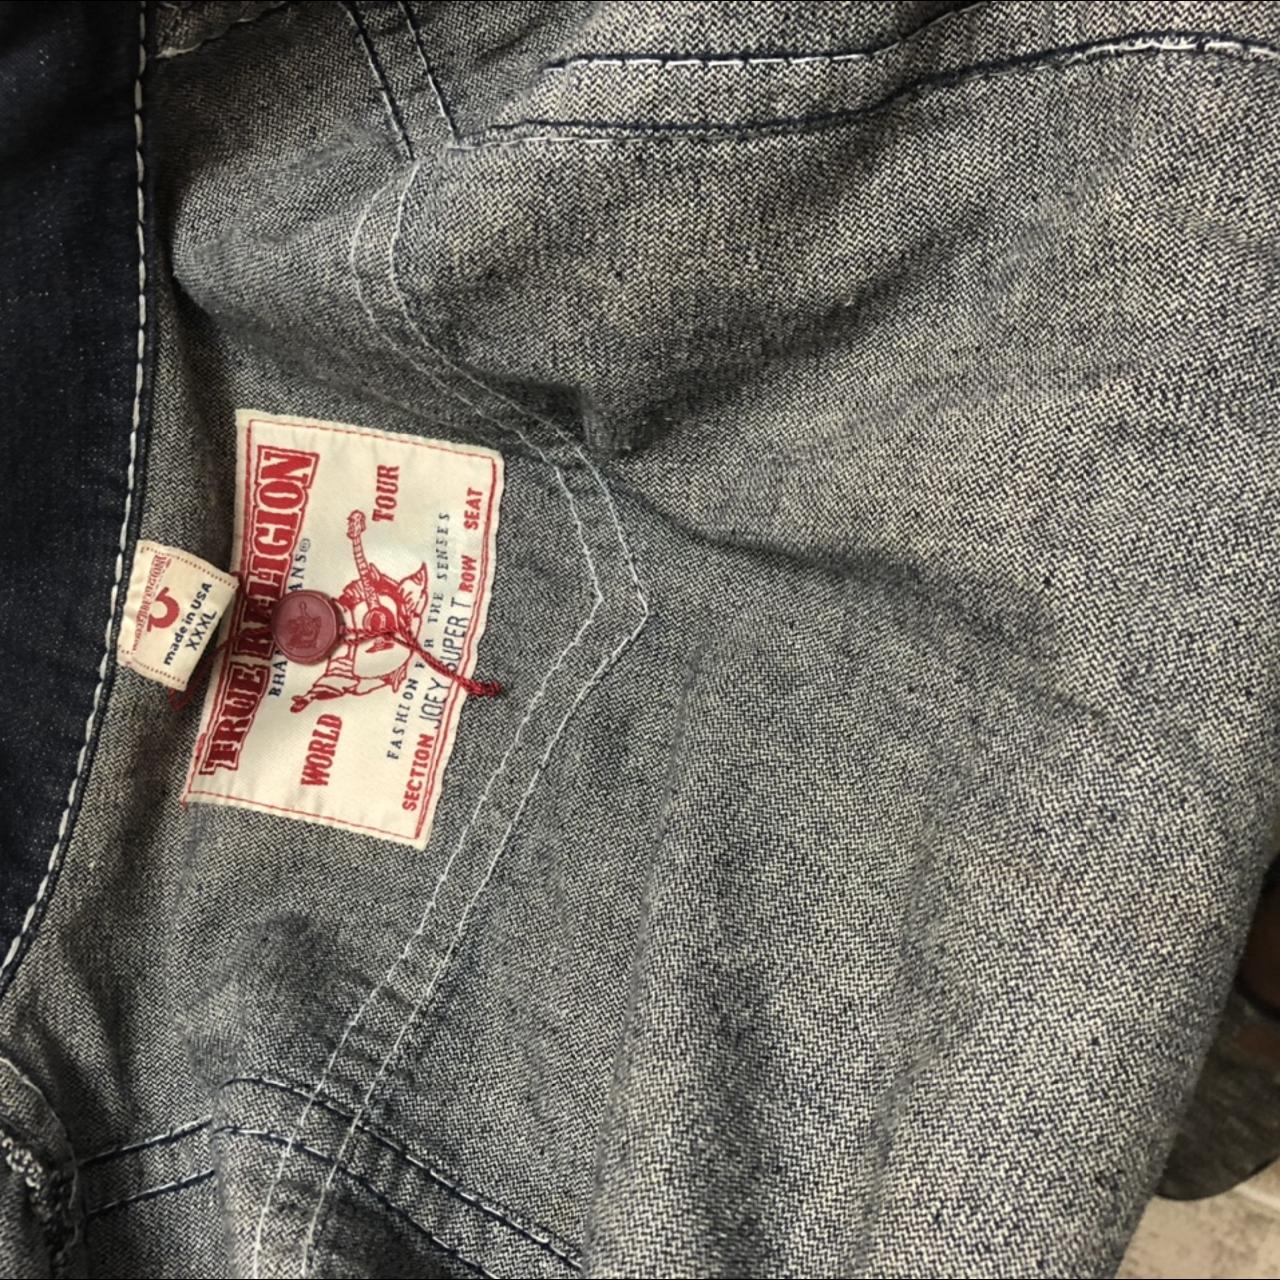 true religion jean jacket great condition fits like... - Depop